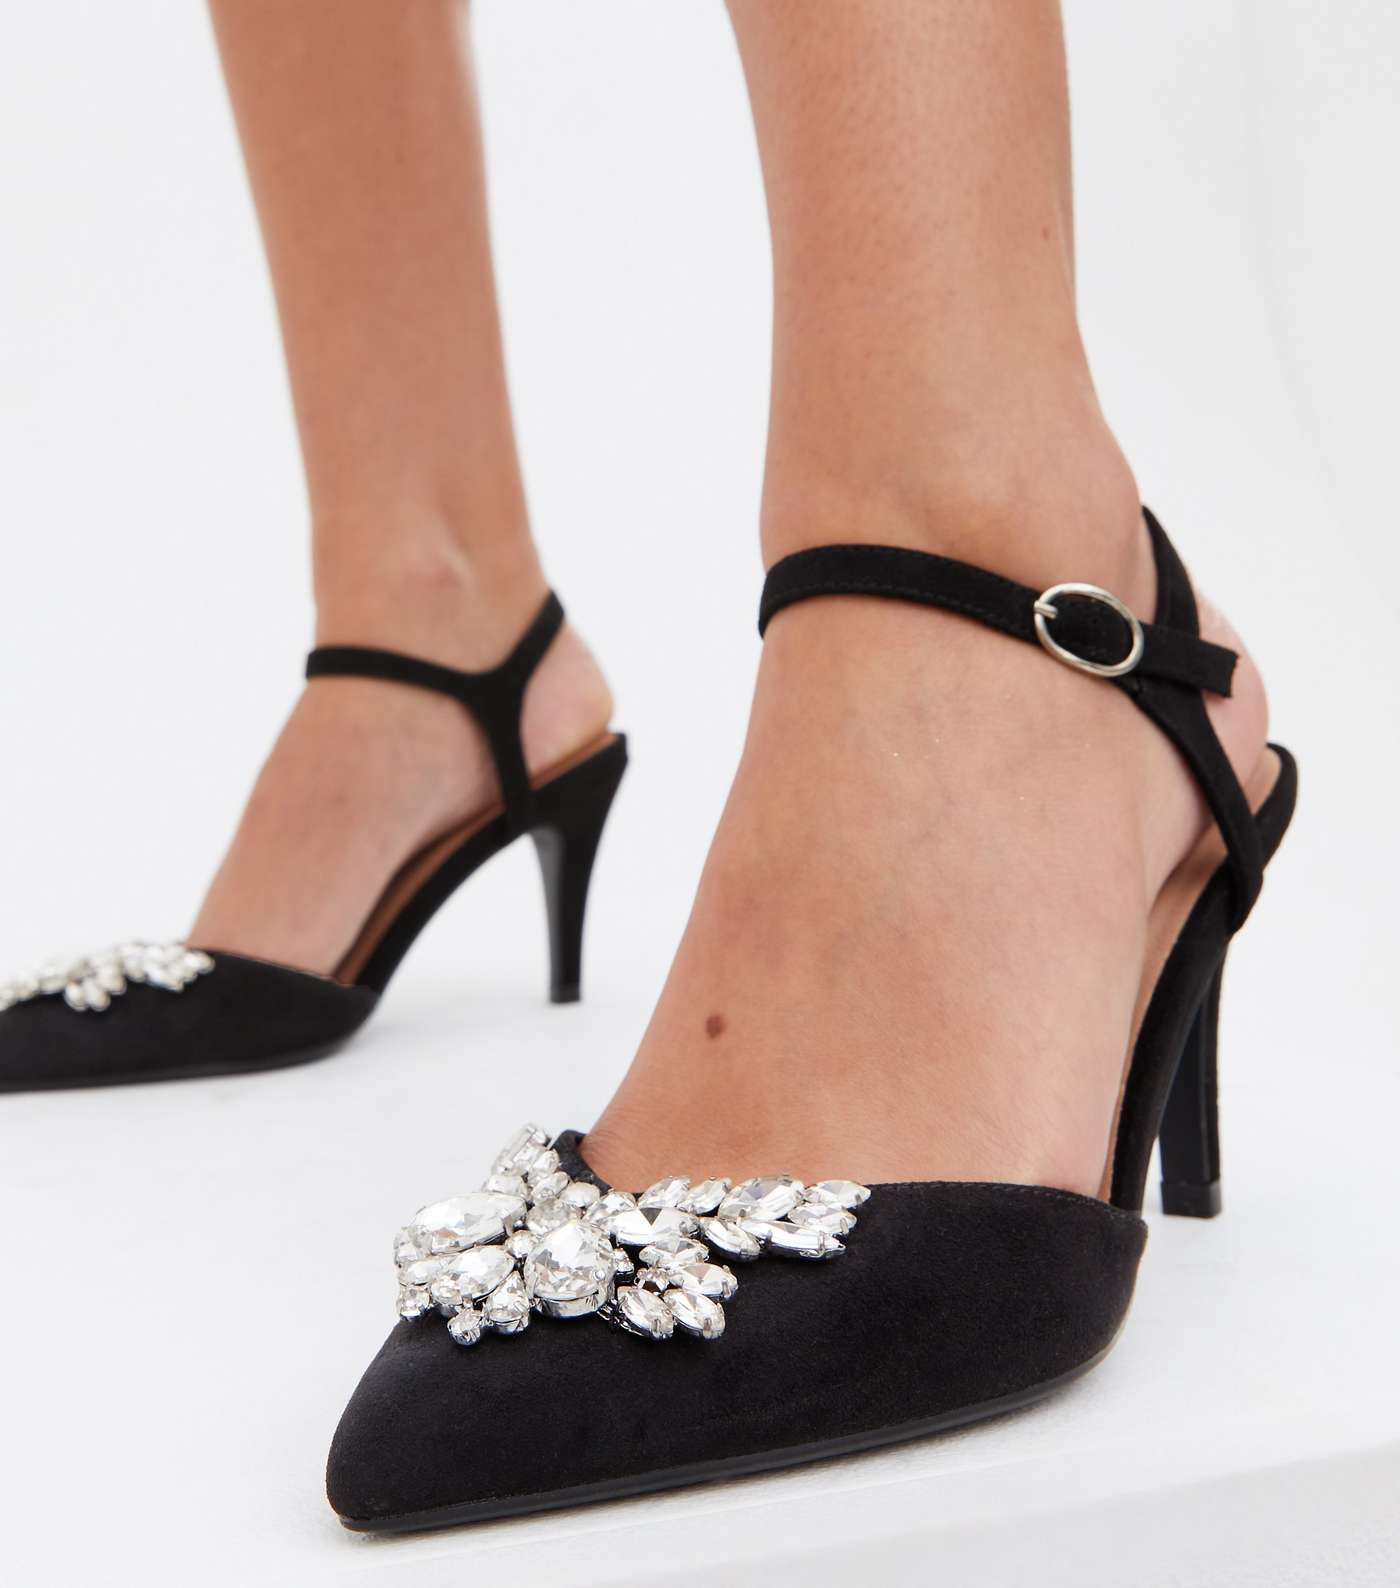 Wide Fit Black Embellished Stiletto Heel Court Shoes Image 2